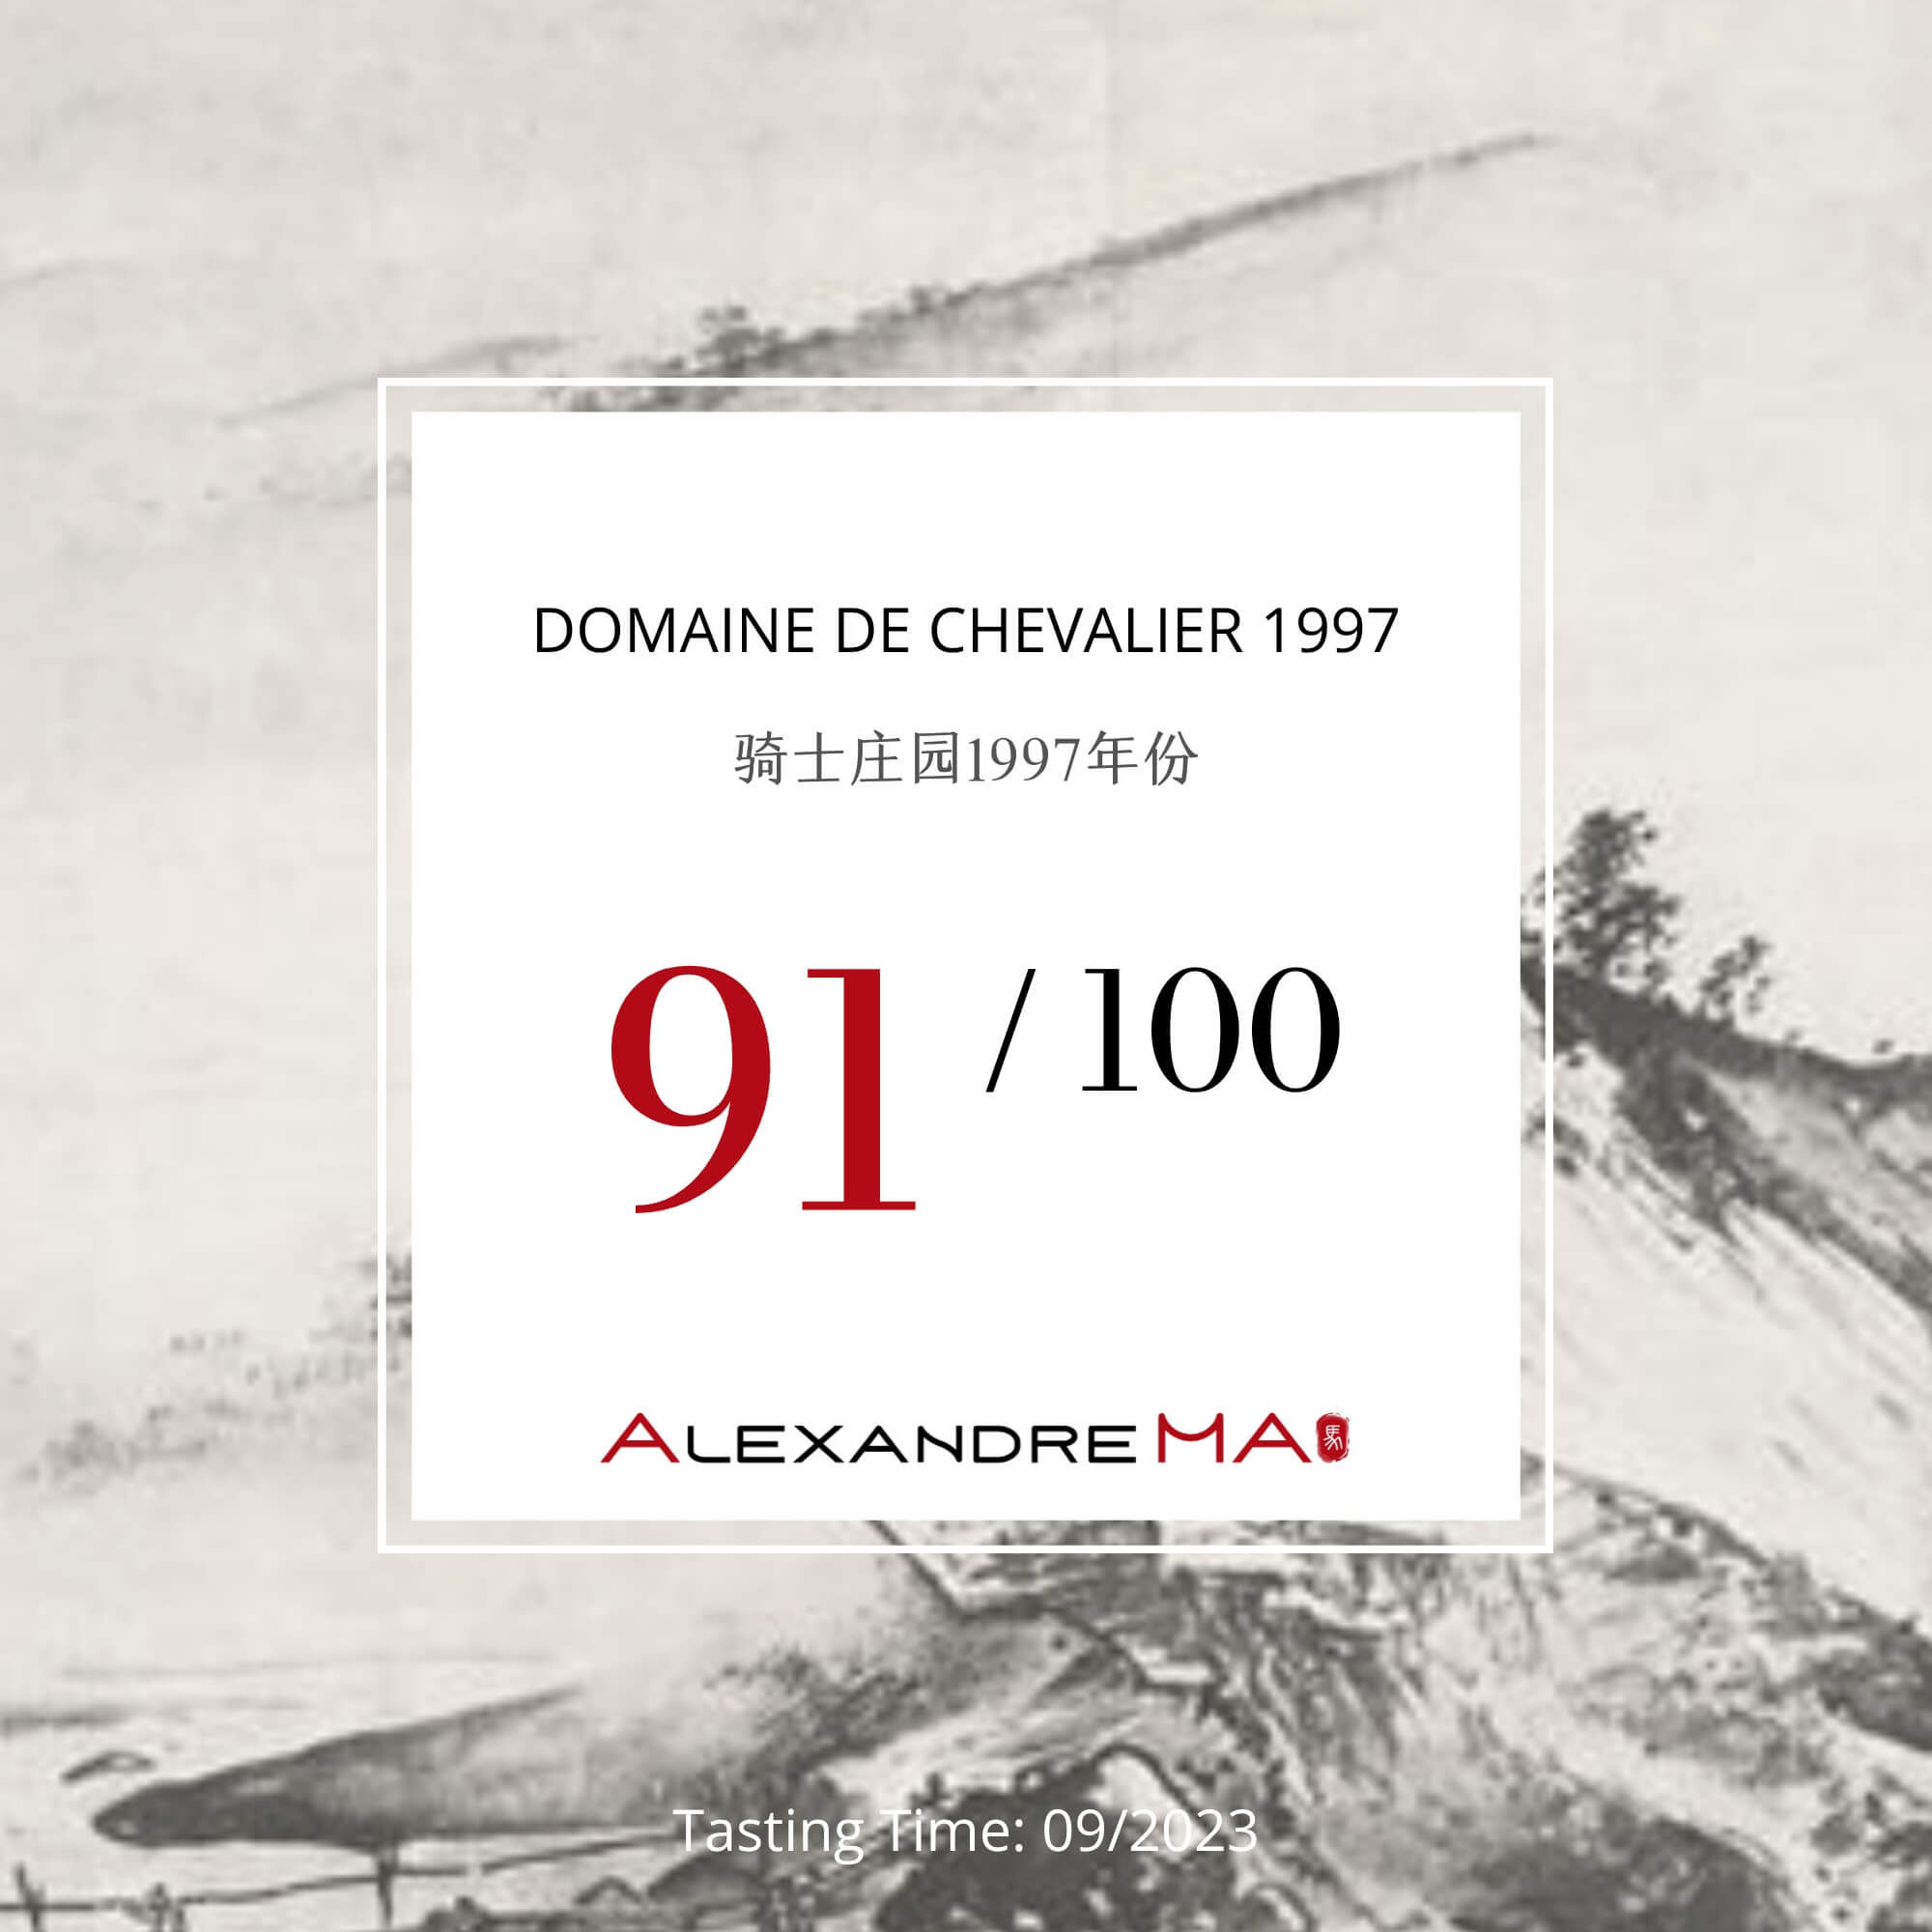 Domaine de Chevalier 1997 - Alexandre MA